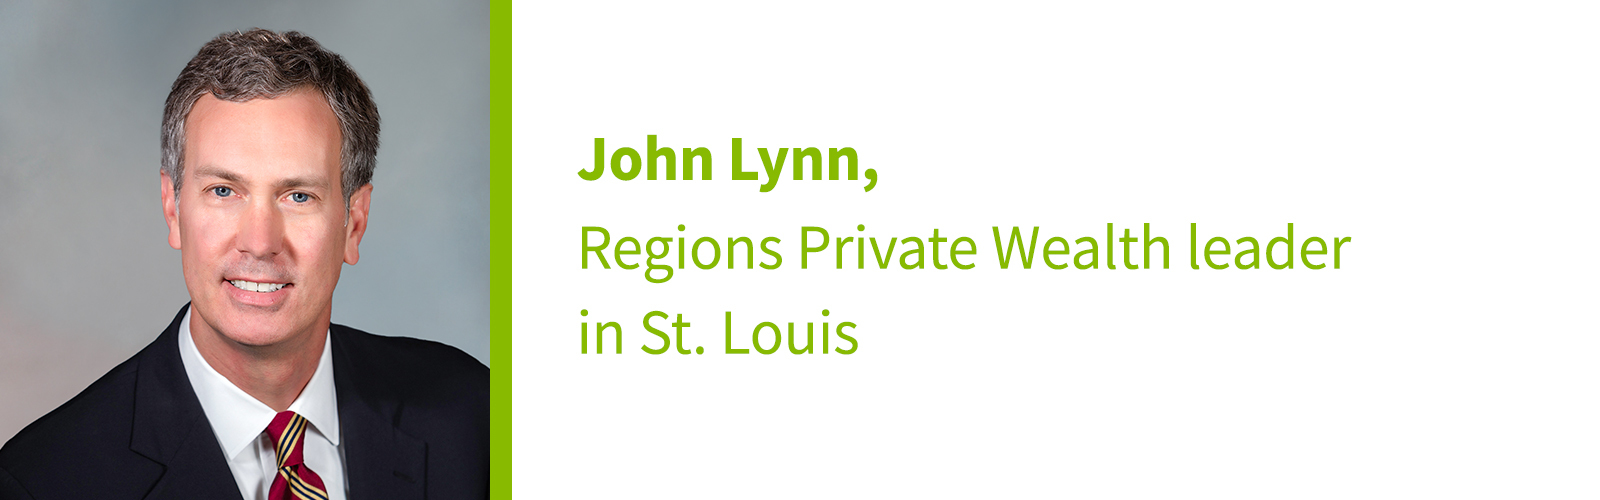 "John Lynn, Regions Private Wealth leader in St. Louis." headshot of John Lynn